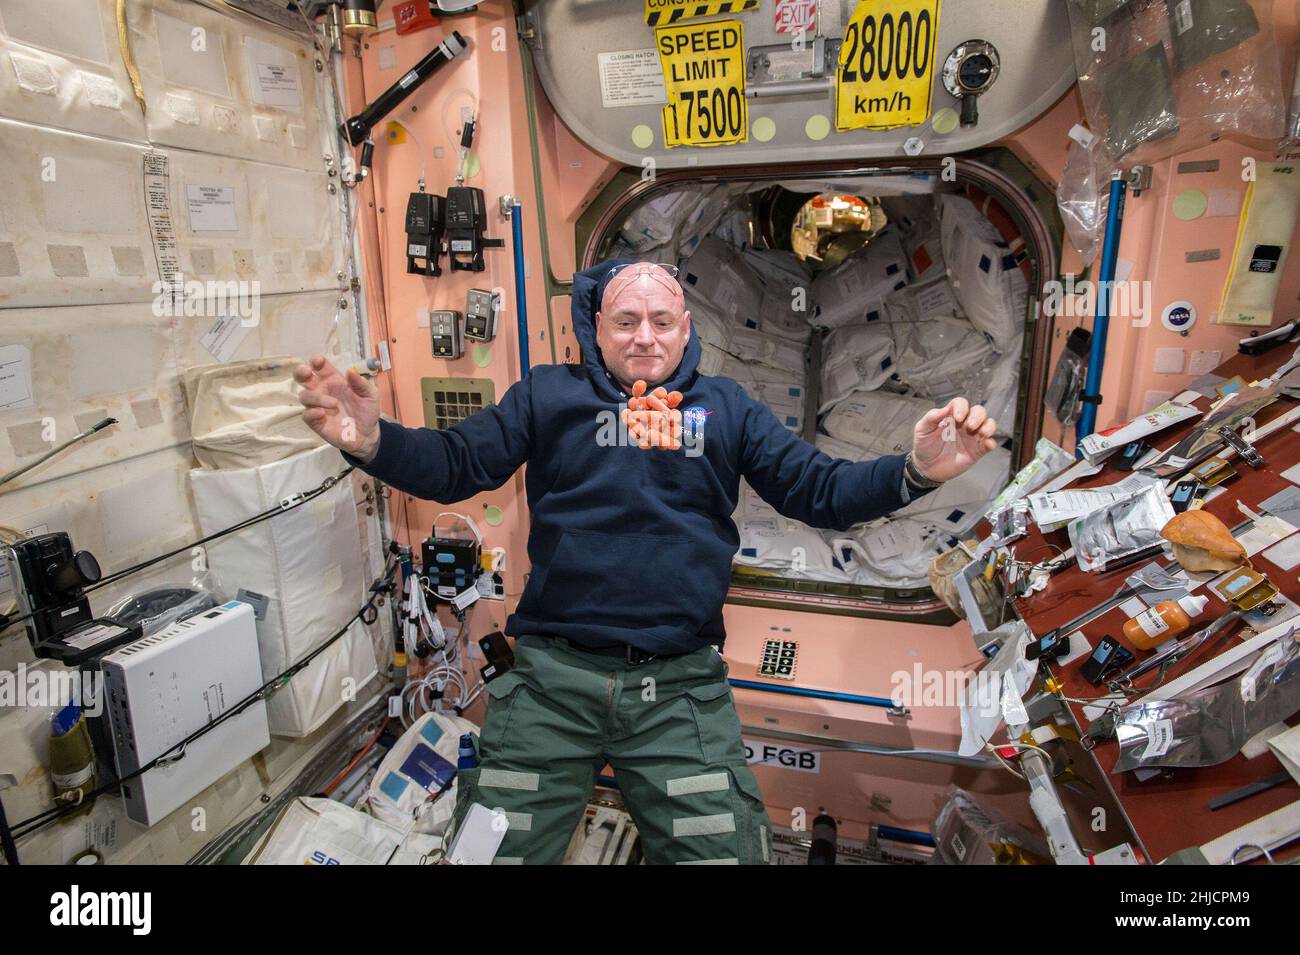 Snack-Zeit auf der Internationalen Raumstation, während NASA-Astronaut Scott Kelly während der Expedition 43 im April 2015 einen Haufen frischer Karotten vor ihm schweben sieht. Scott ist eines der einjährigen Crewmitglieder auf der Station, um zu testen, wie der menschliche Körper auf eine ausgedehnte Präsenz im Weltraum reagiert, als Vorbereitung auf die langen Flüge, die die NASA zum Mars und zurück in die Zukunft plant. Stockfoto